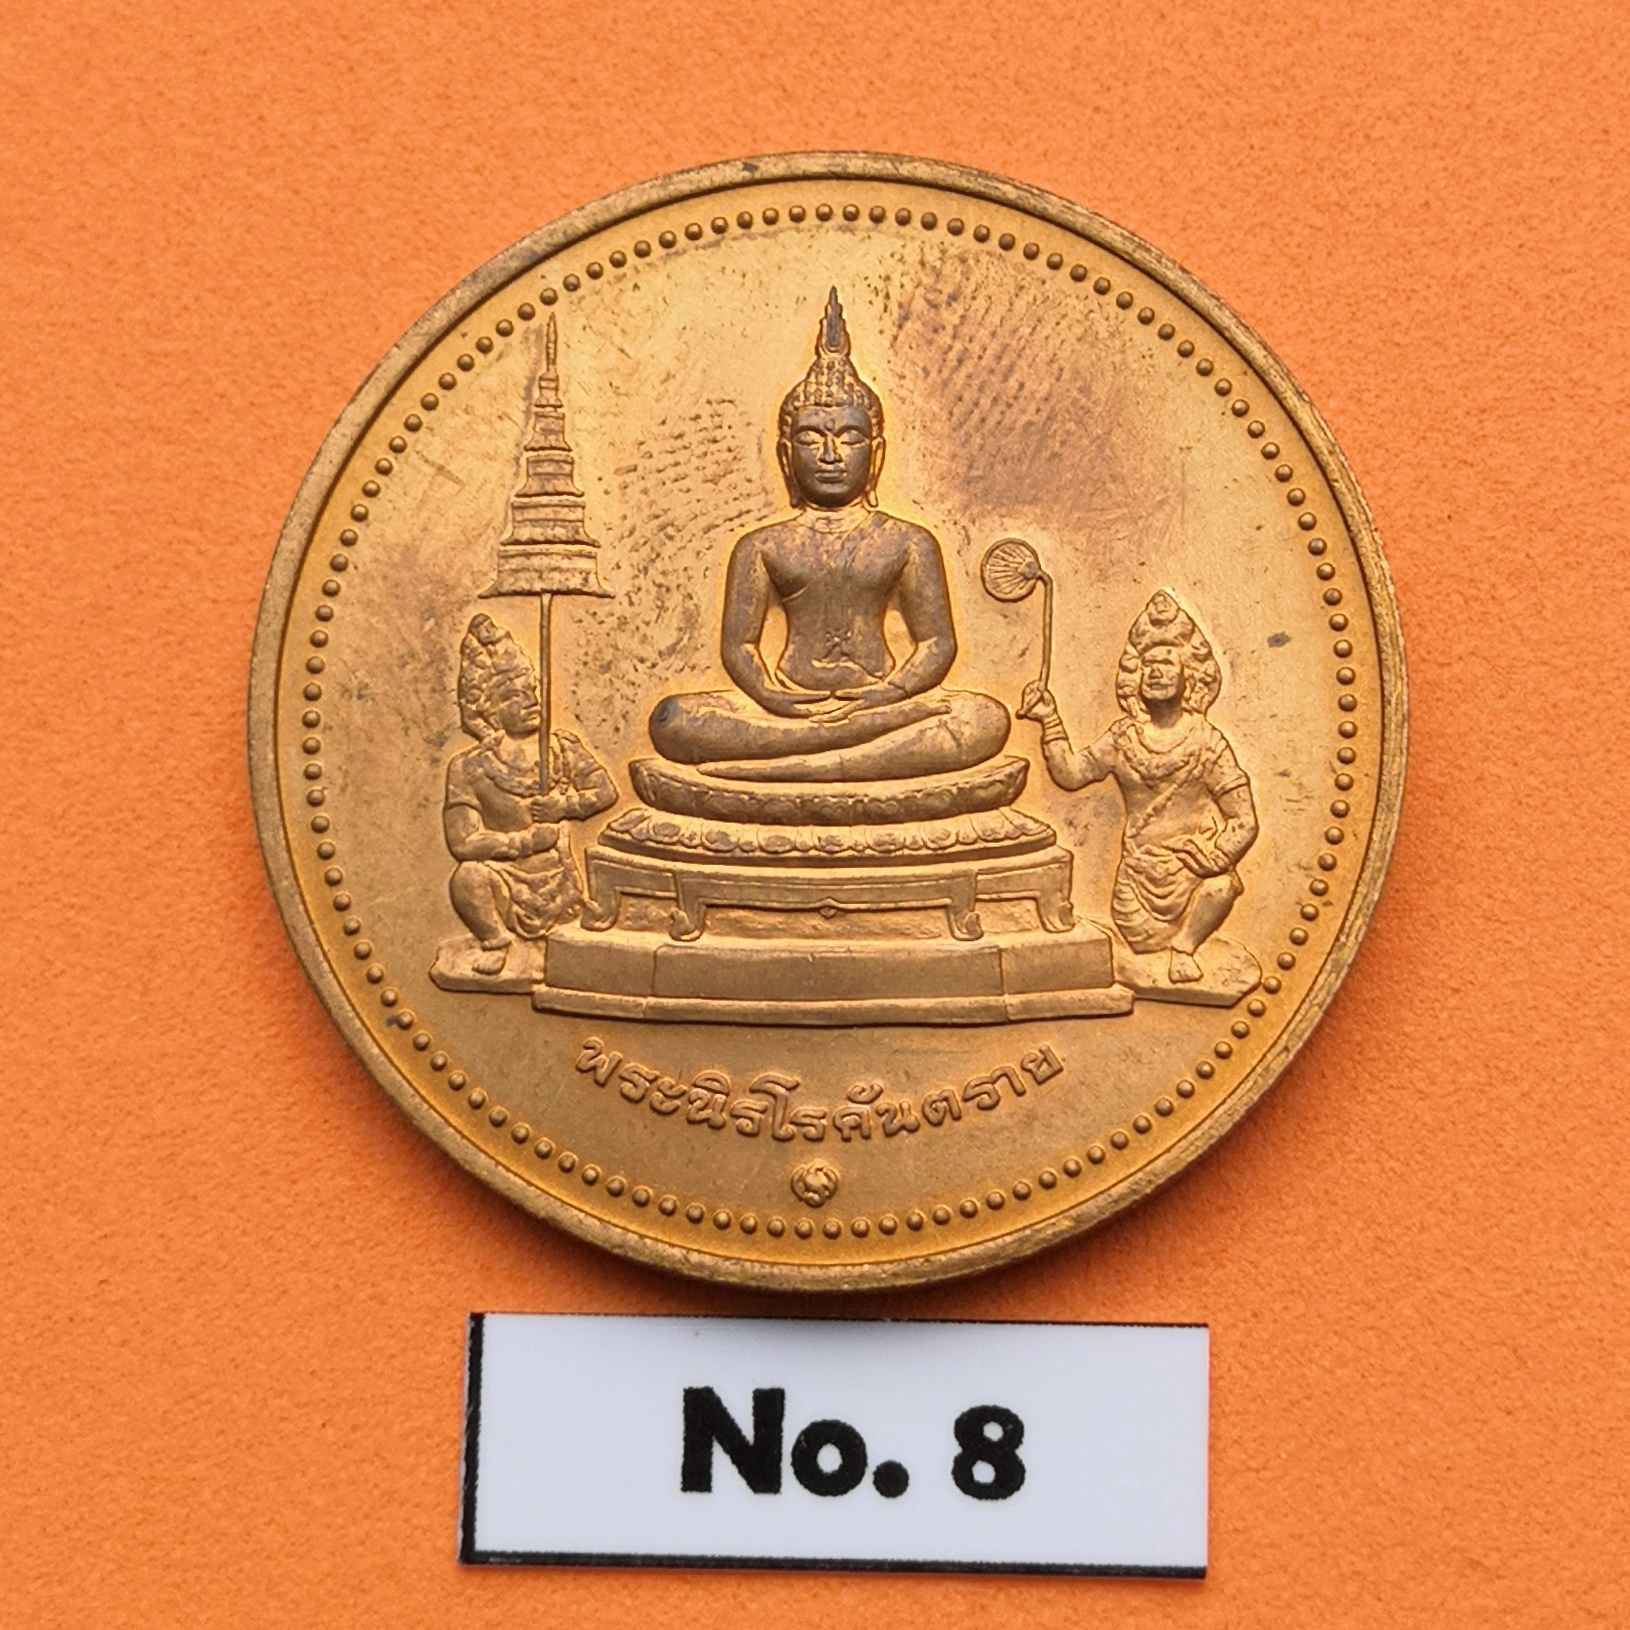 ข้อมูลเพิ่มเติมของ เหรียญท้าวฮู พระนิรโรคันตราย ท้าวหิรัญพนาสูร เทพผู้พิทักษ์รัชกาลที่ 6 ที่ระลึกในวโรกาสฉลองพระบรมราชสมภพ 120 ปี พระมงกุฏเกล้า